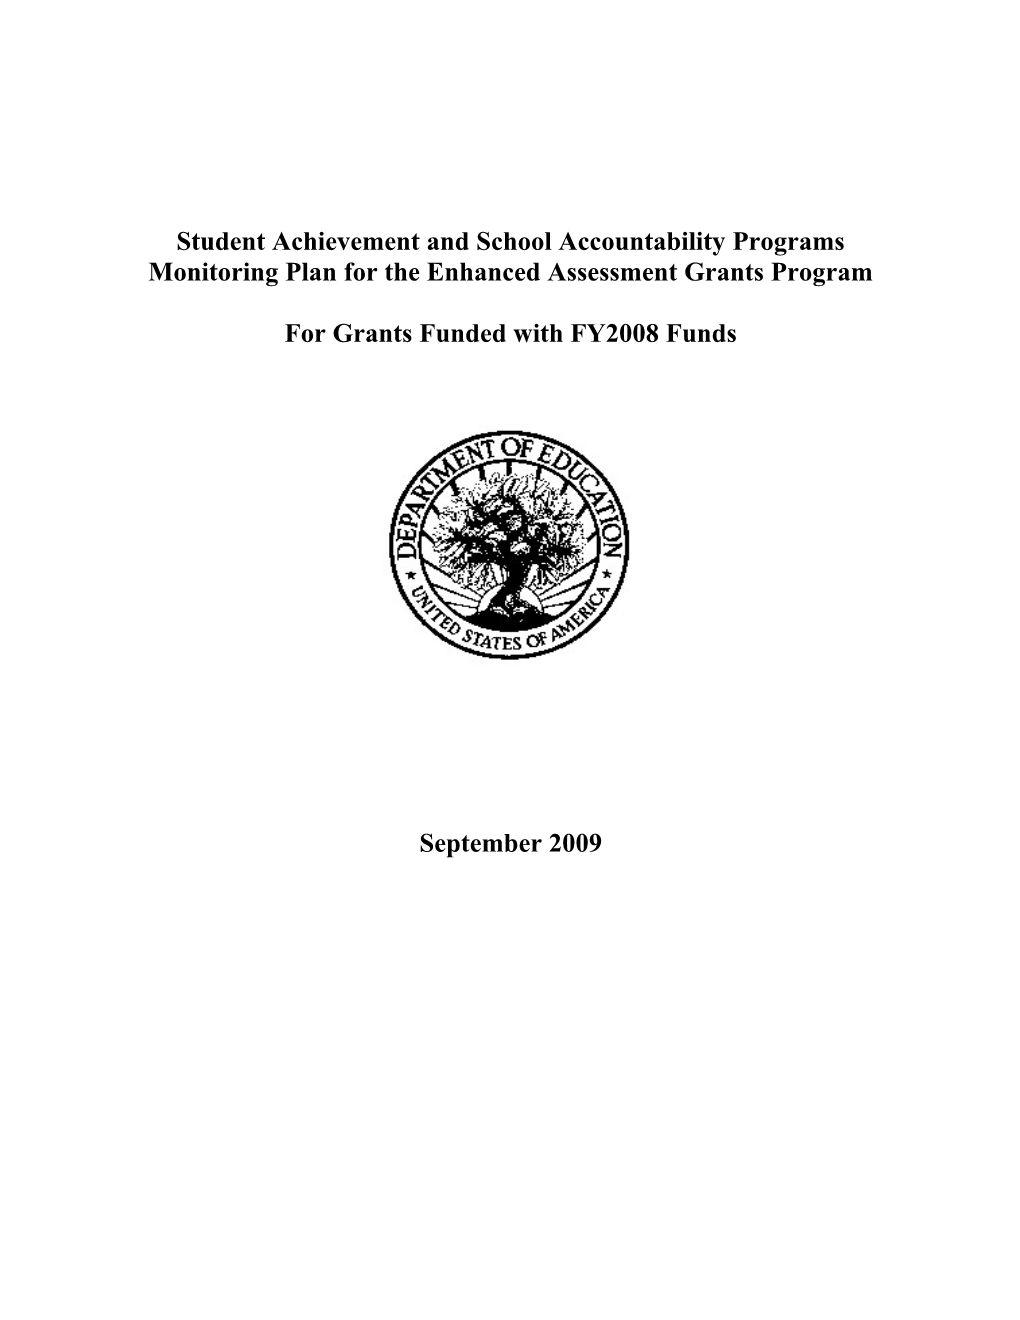 Enhanced Assessment Grant Program FY 2008 (MS WORD)